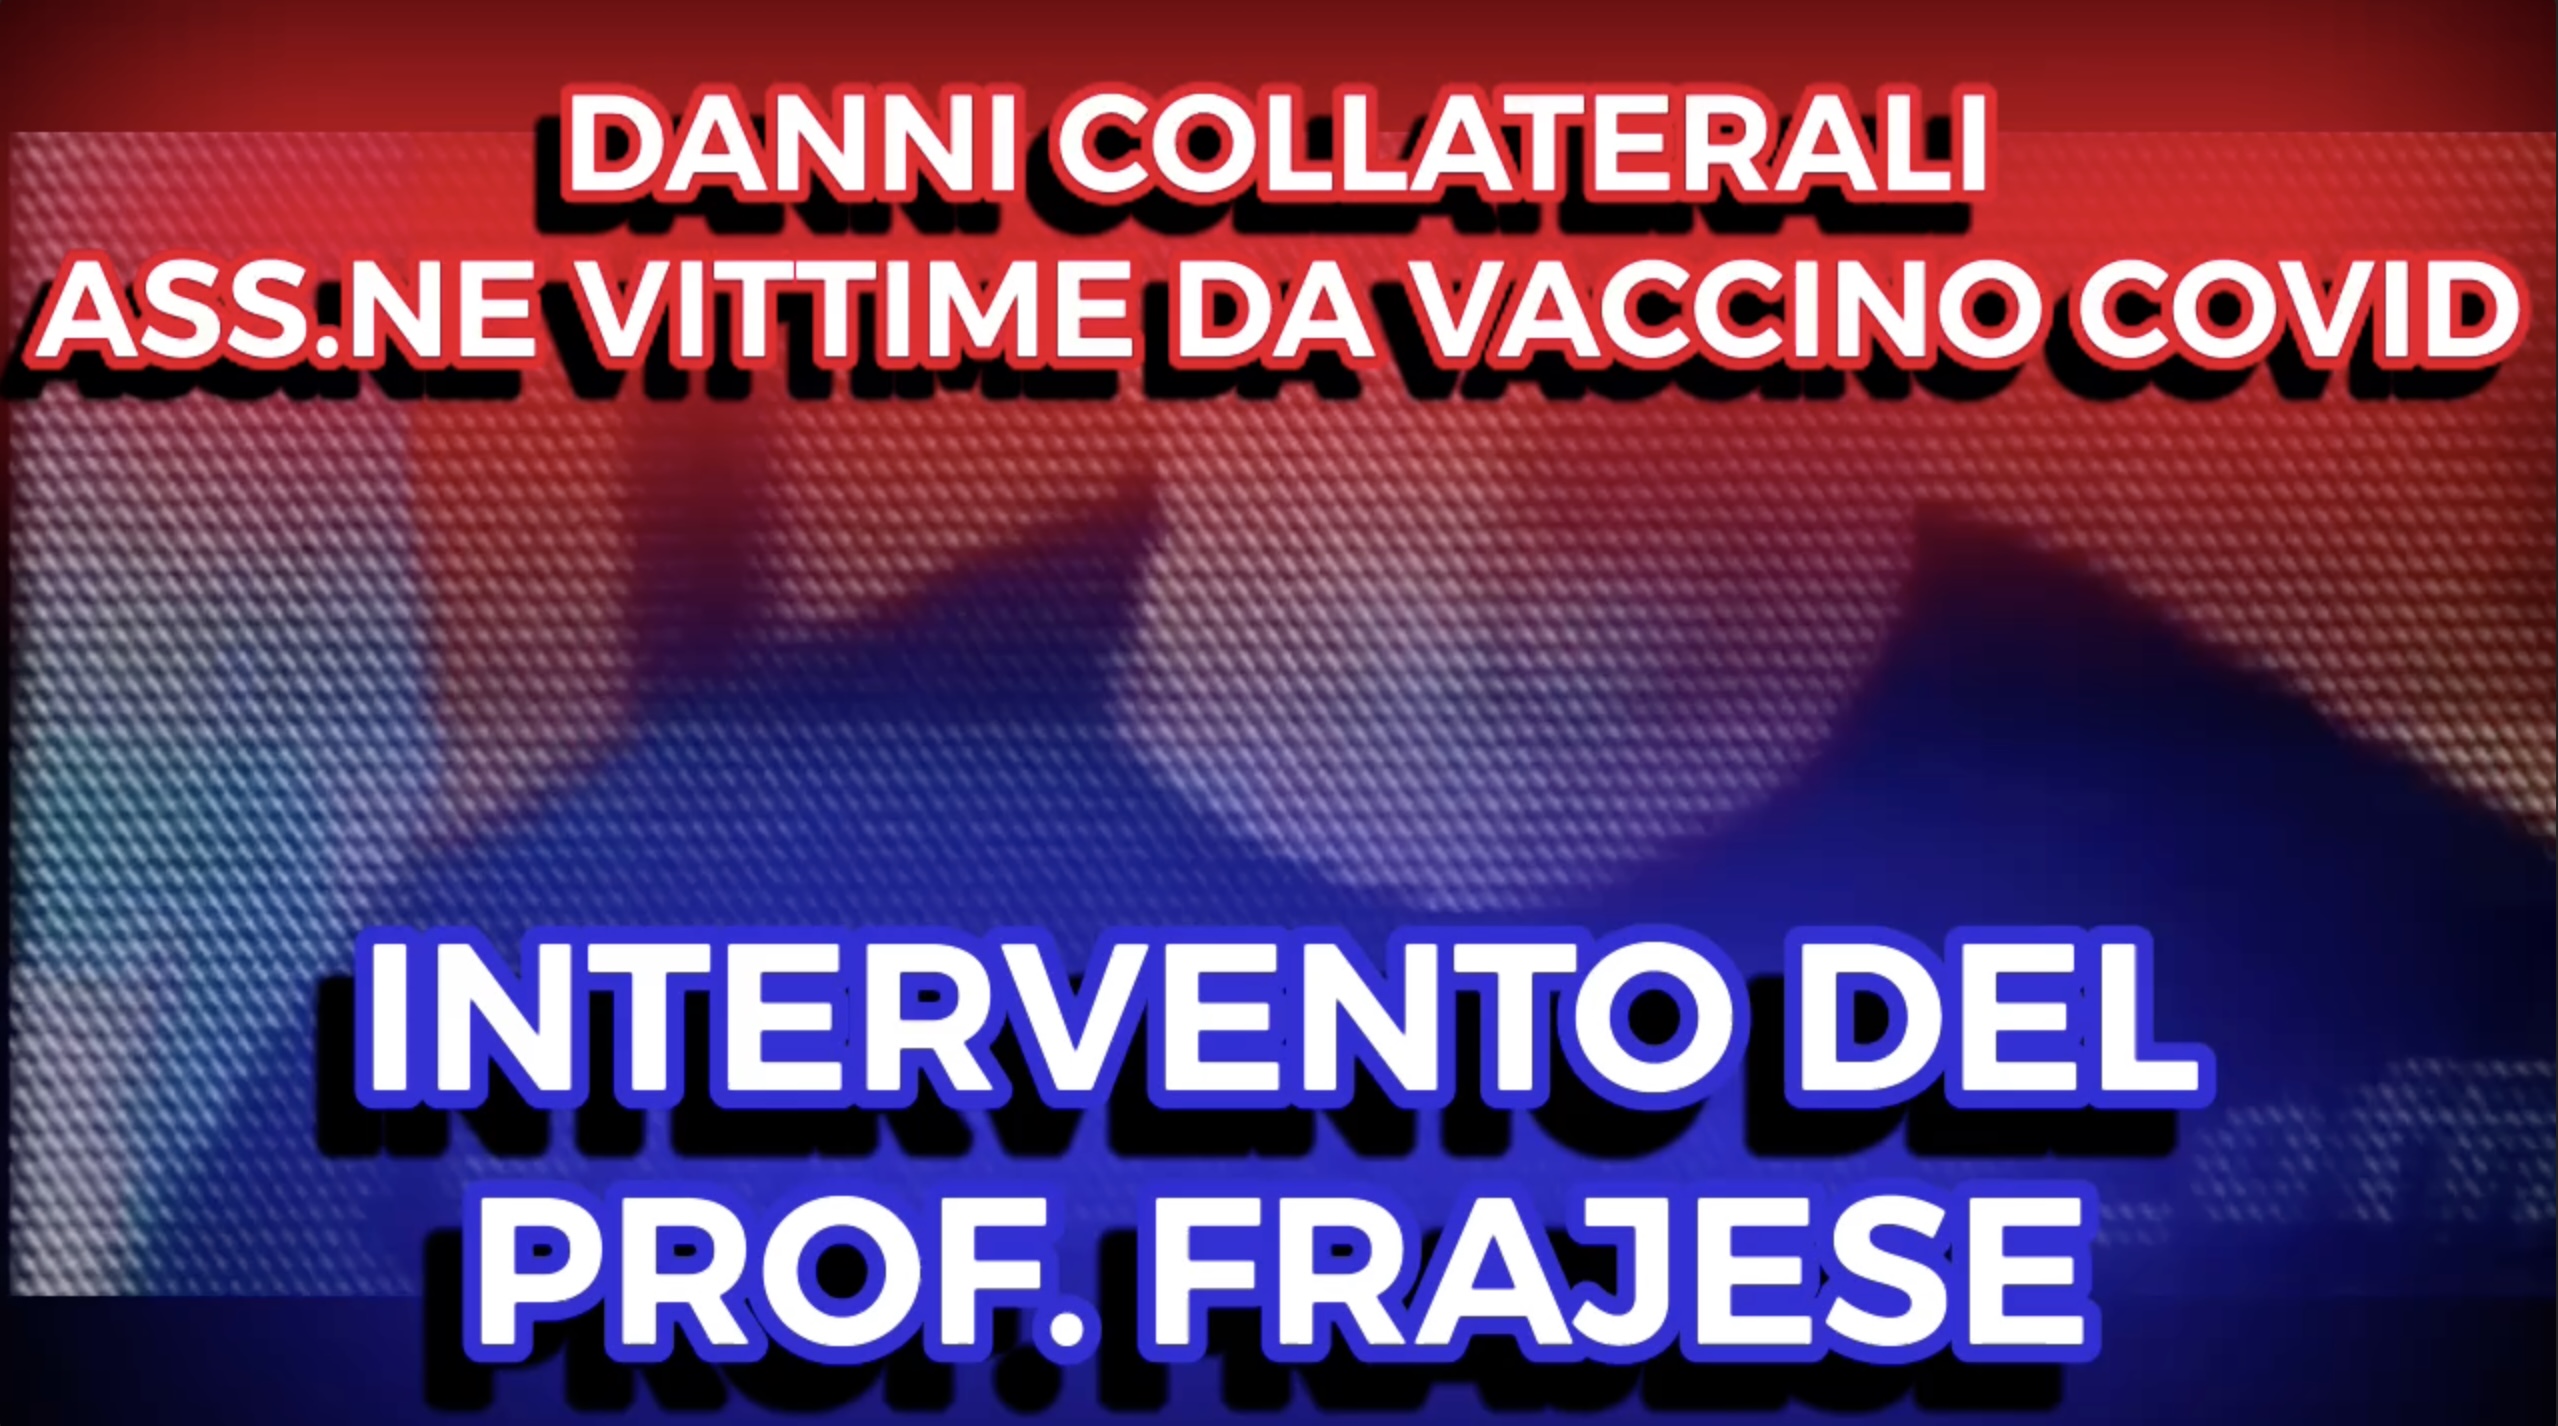 Danni Collaterali da Vaccino Covid-19 - Intervento del Prof. Frajese